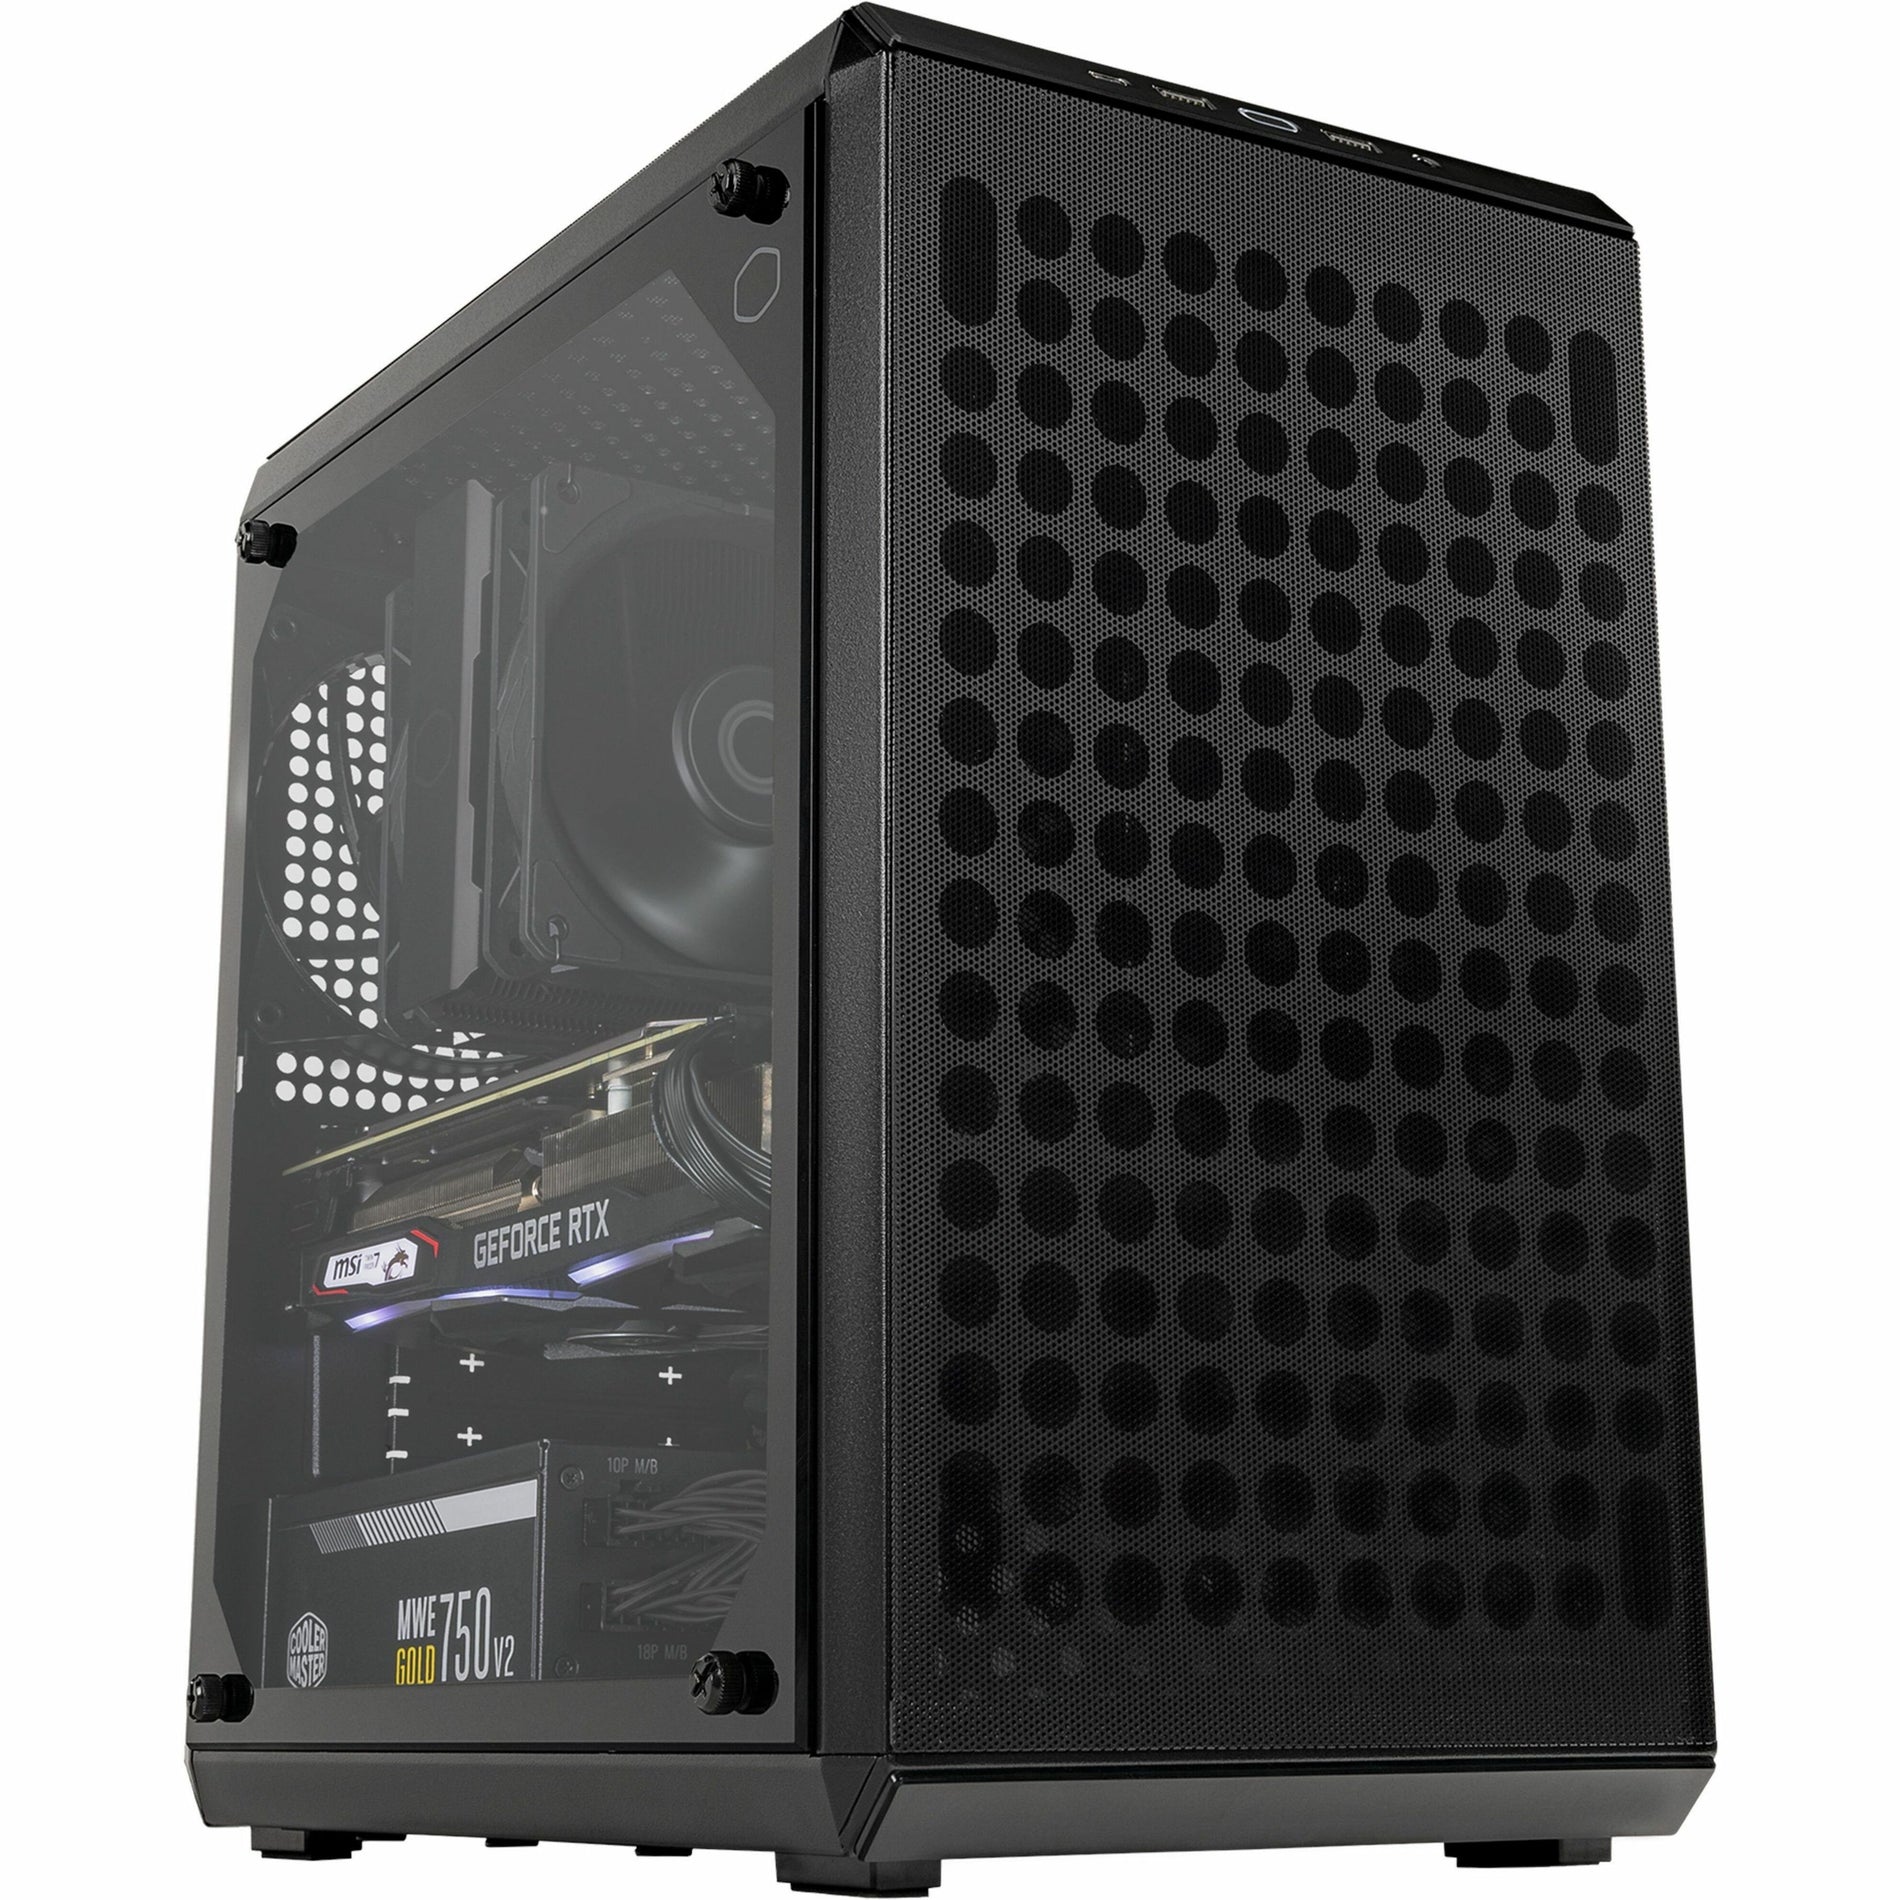 Cooler Master QUBE Q300L V2 Computer Case (Q300LV2-KGNN-S00)